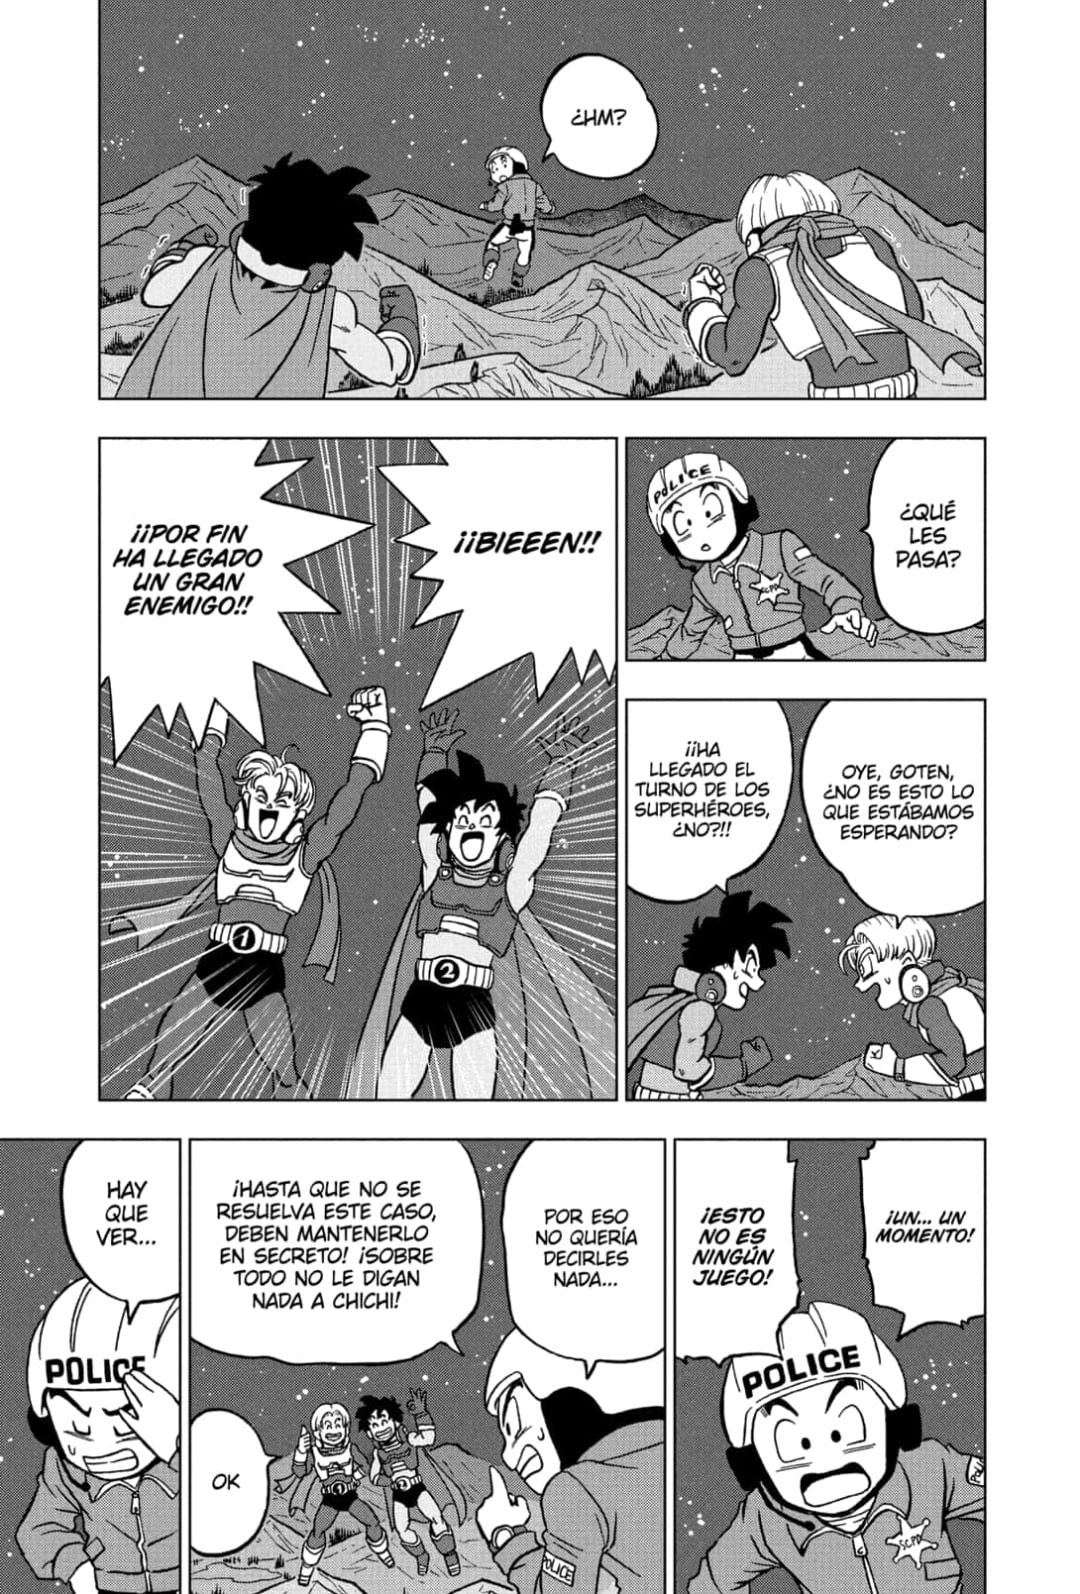 Dragon Ball Super libera el capítulo 90 del manga: así lo puedes leer en  español y gratis - Crónica de Xalapa